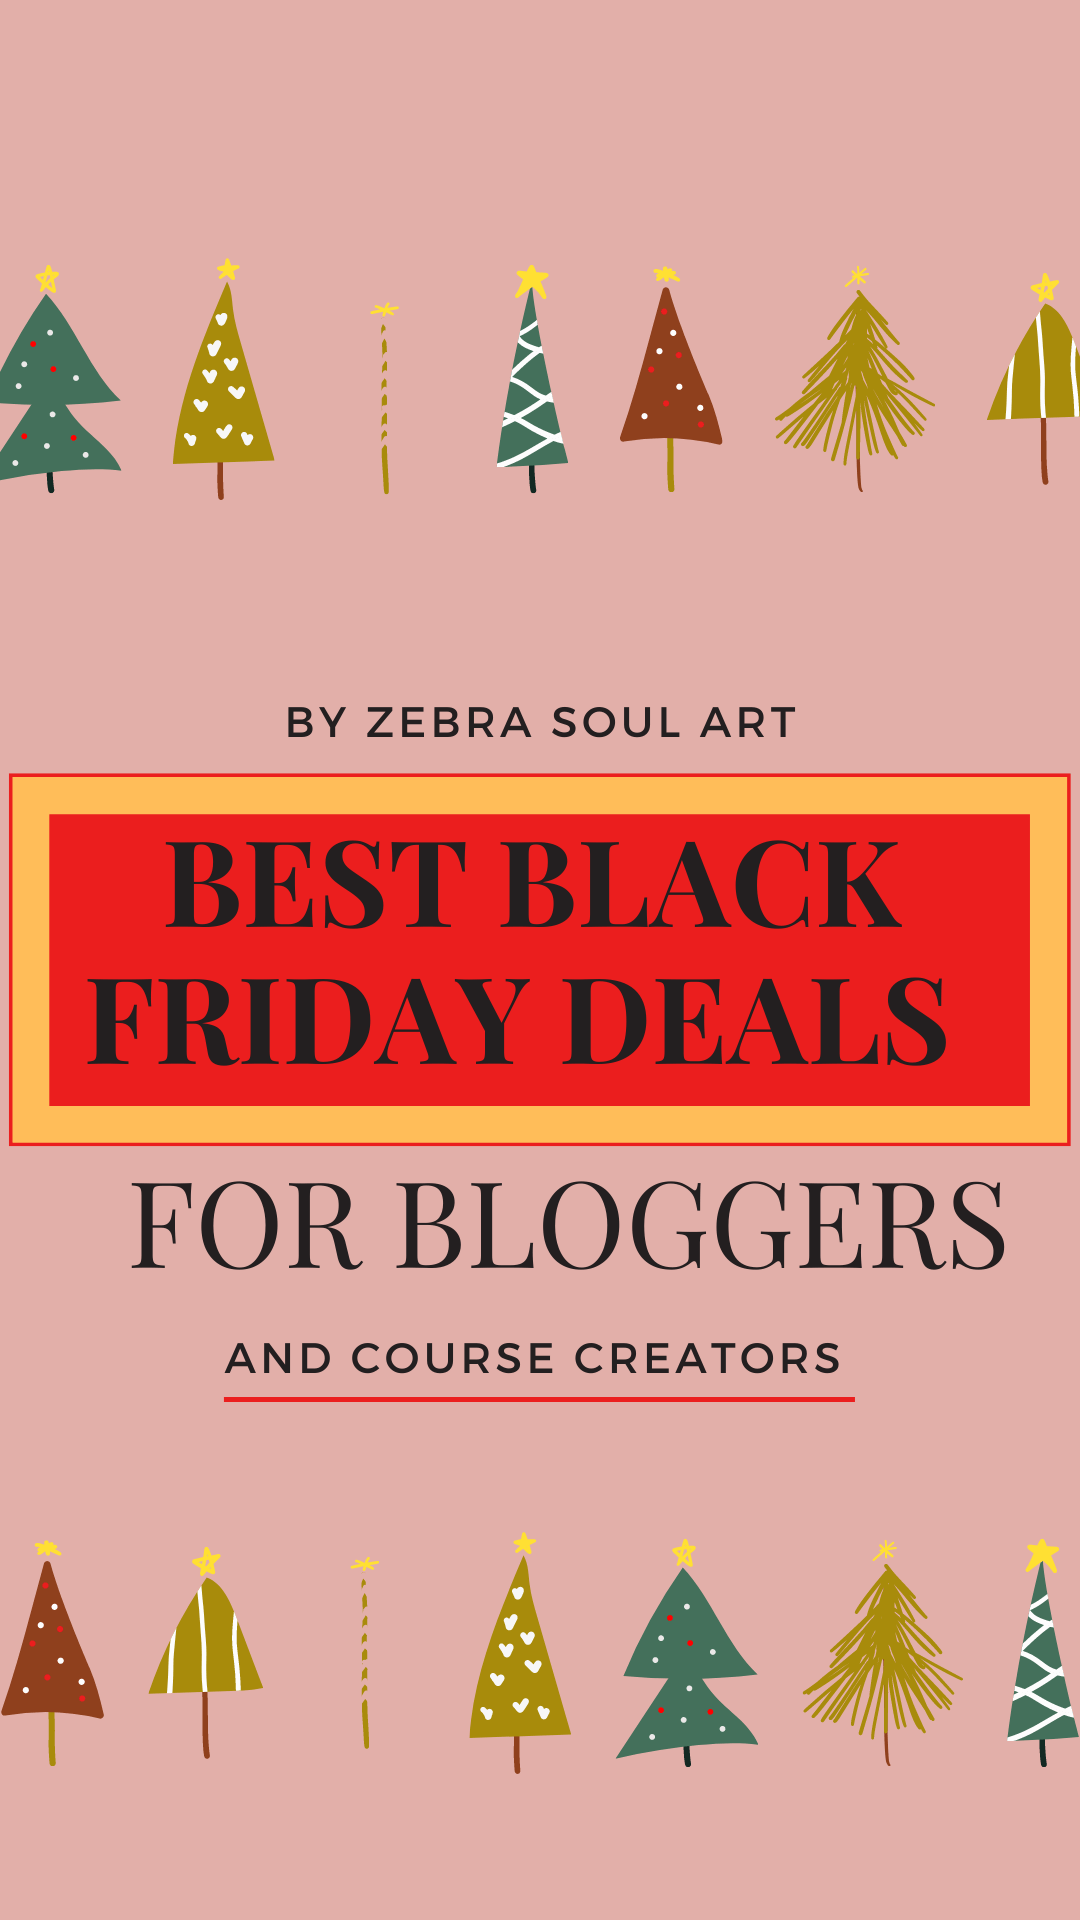 BLACK friday deals bloggers course creators